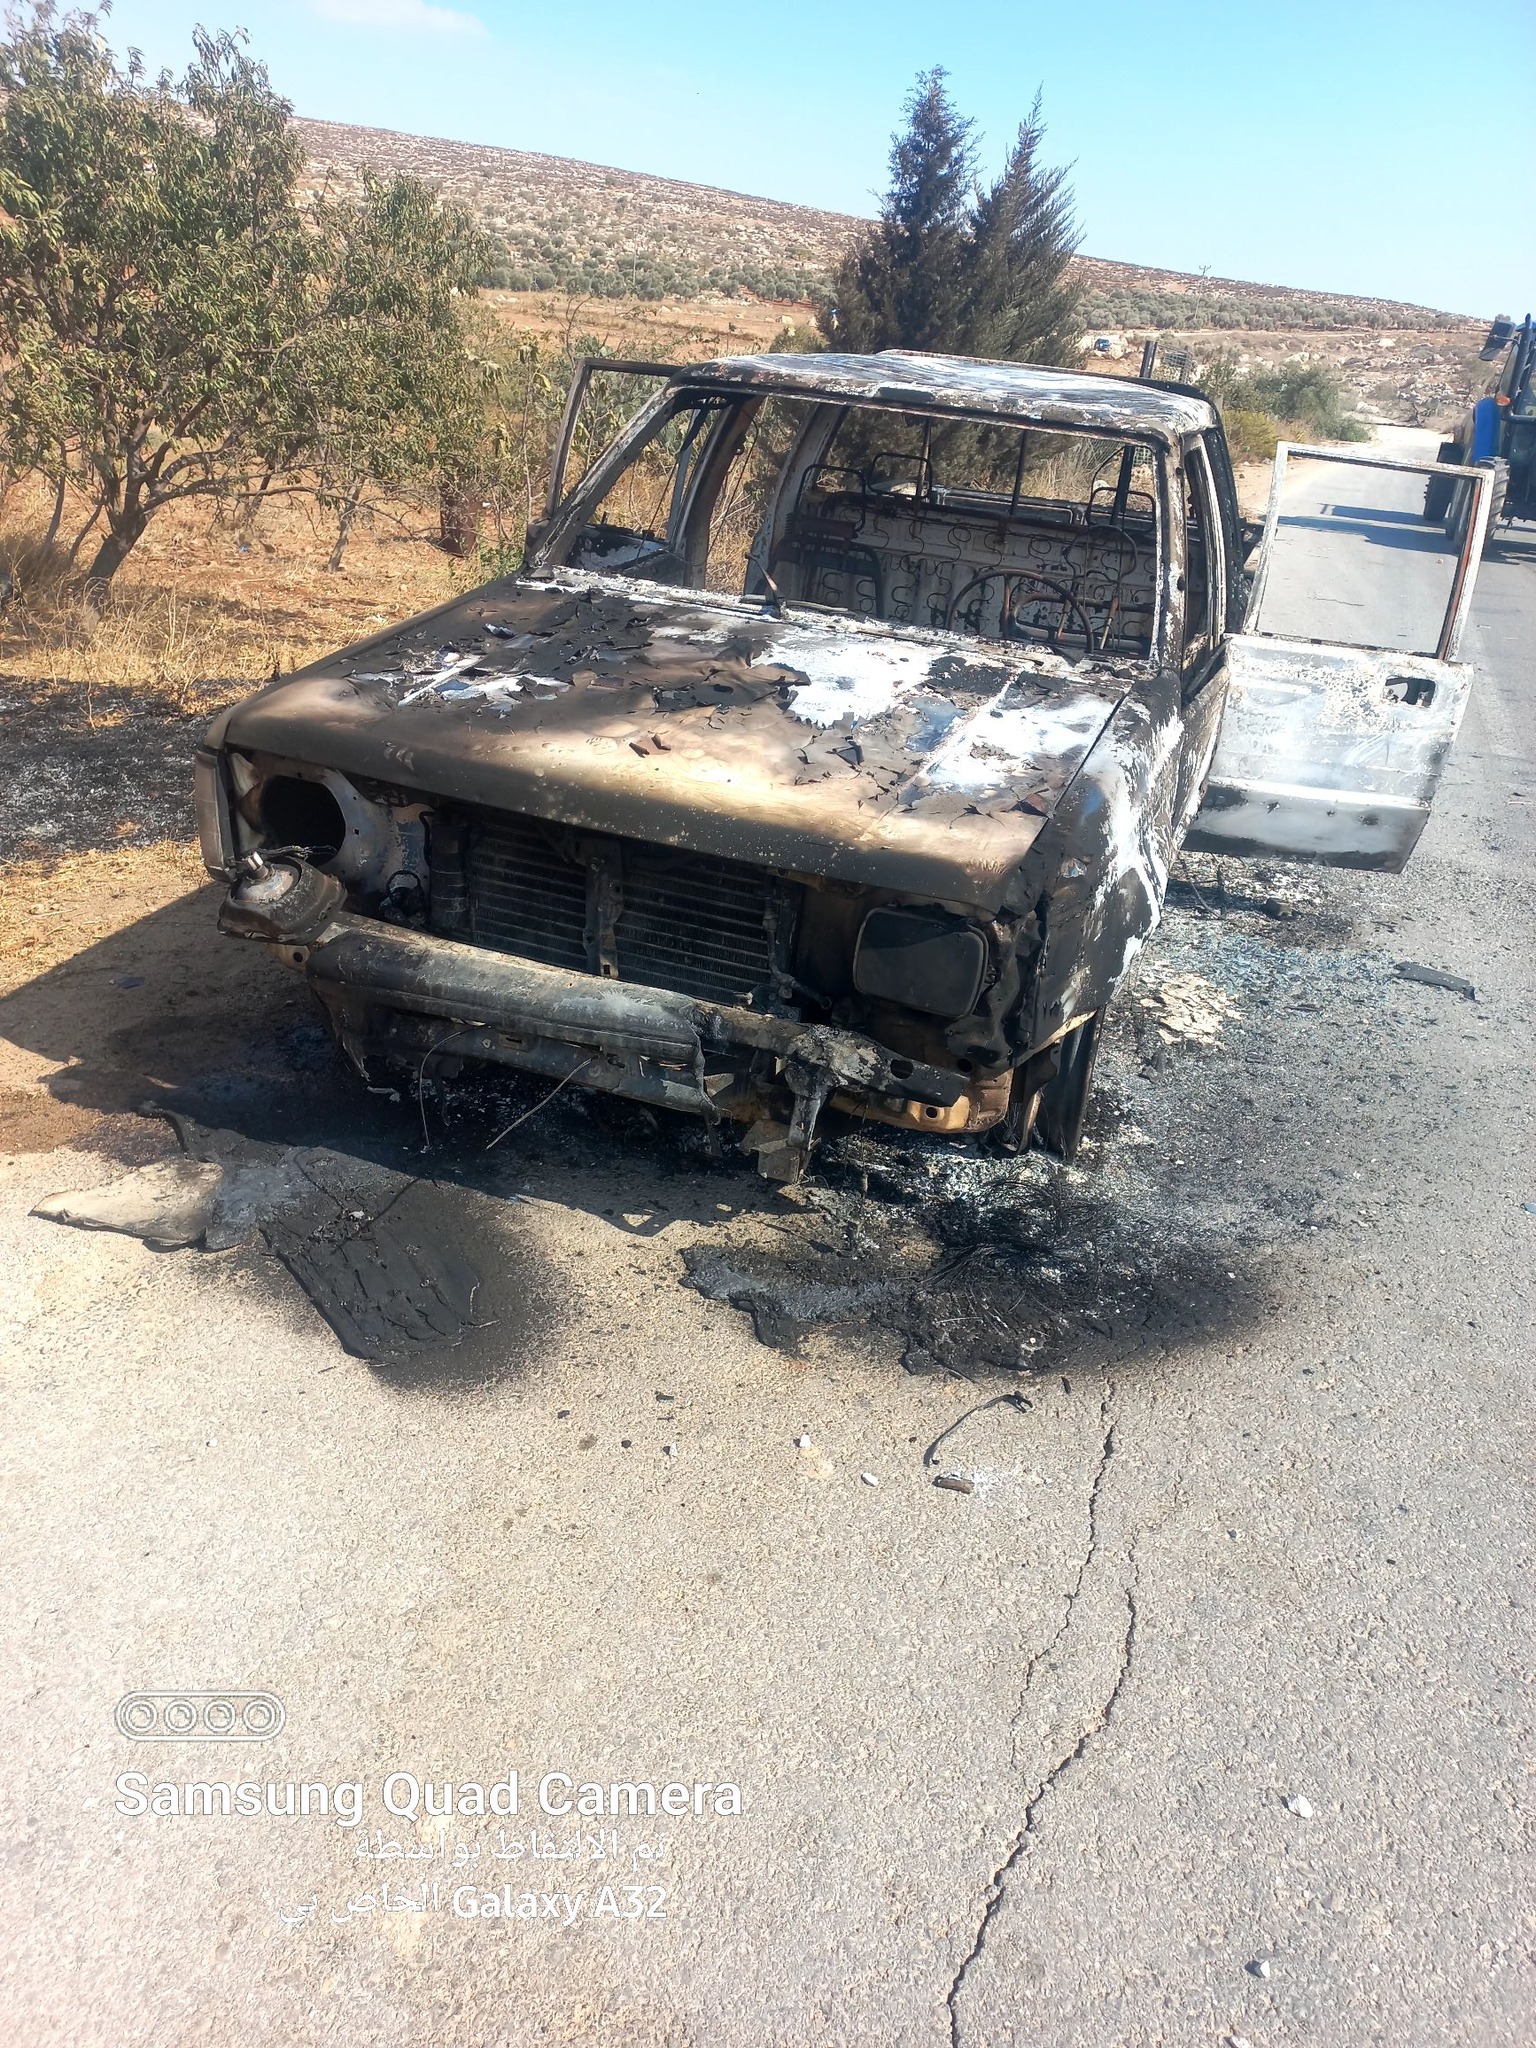 أحرق مستوطنون مؤخرًا سيارة للأستاذ ياسر في المغير